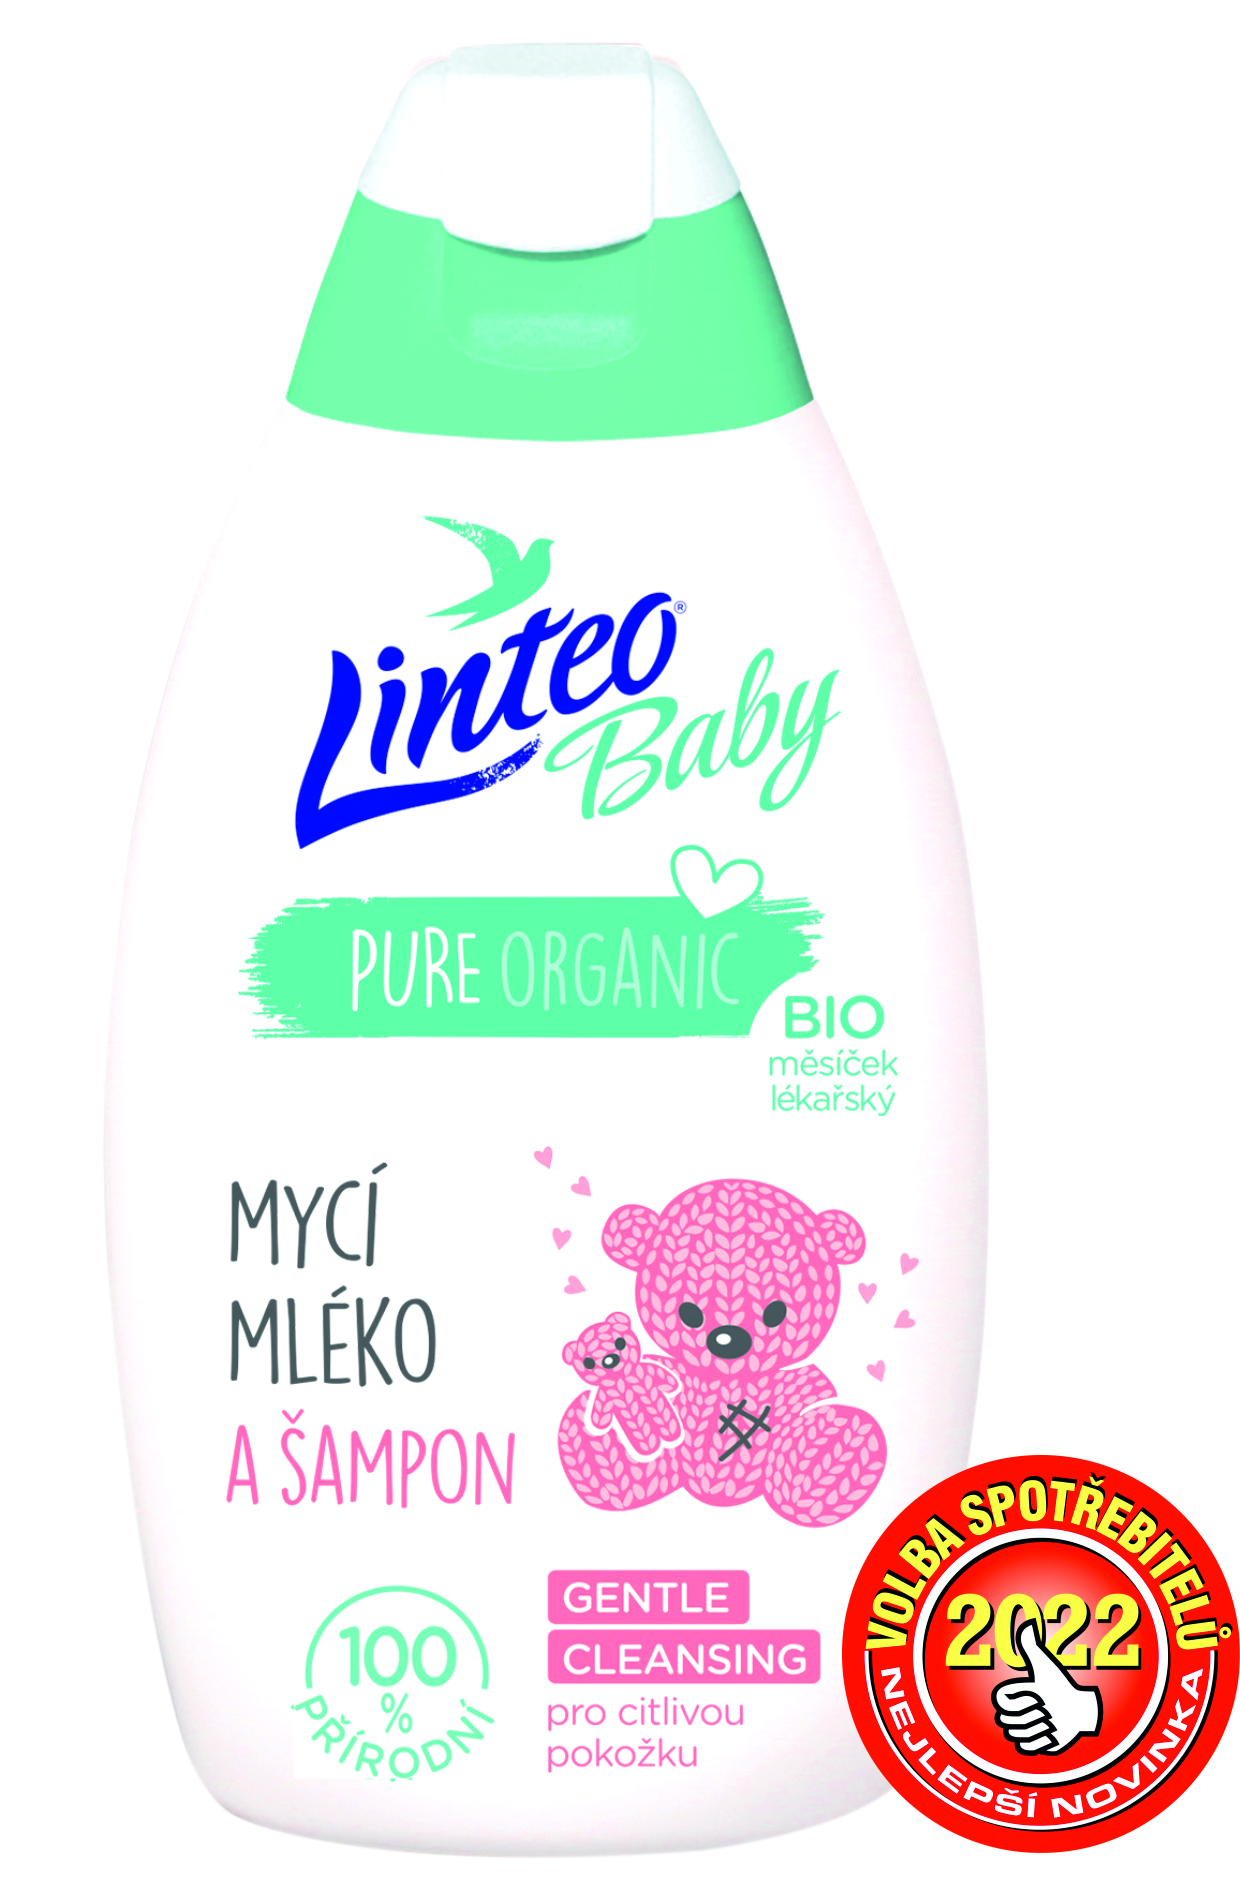 Linteo Dětské mycí mléko a šampon s Bio měsíčkem lékařským Baby 425 ml